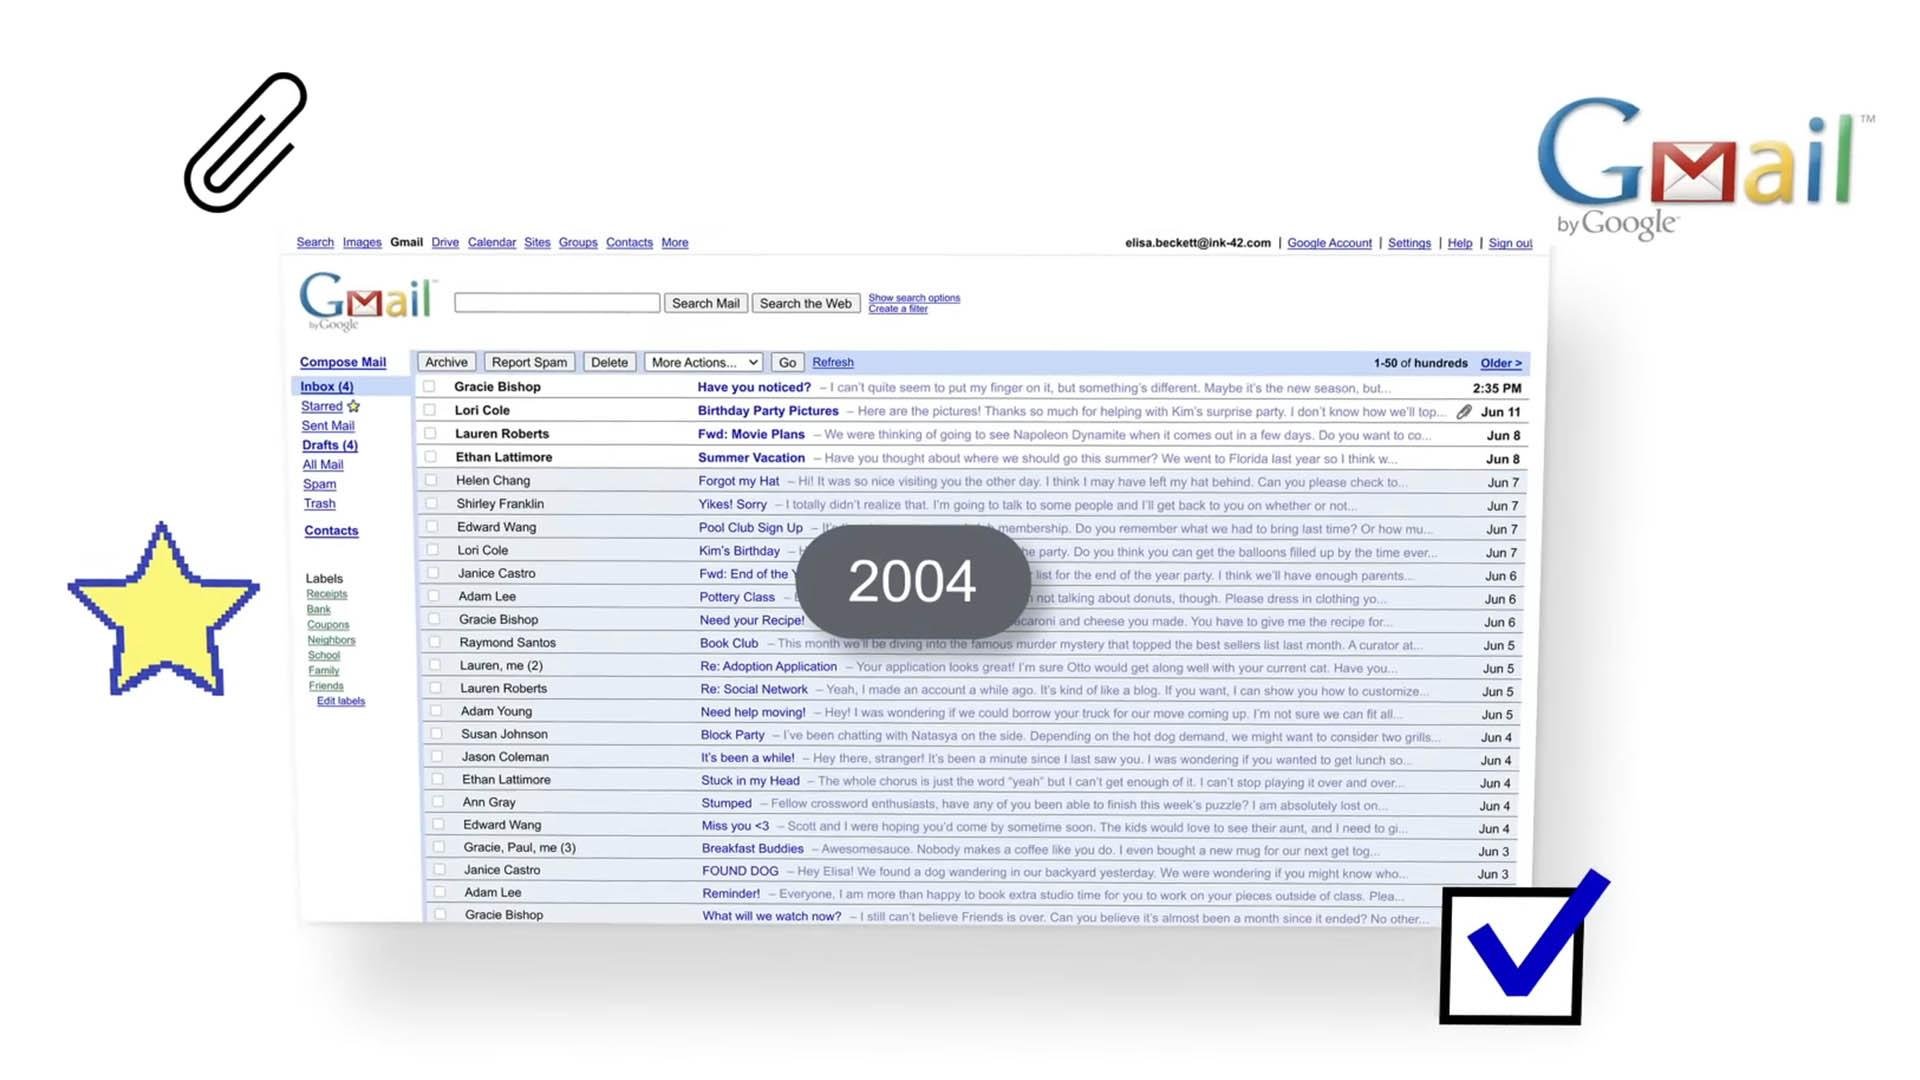 Interface do Gmail em 2004, adotando elementos mais simples para agilizar o carregamento das páginas. (Fonte: Google / Reprodução)